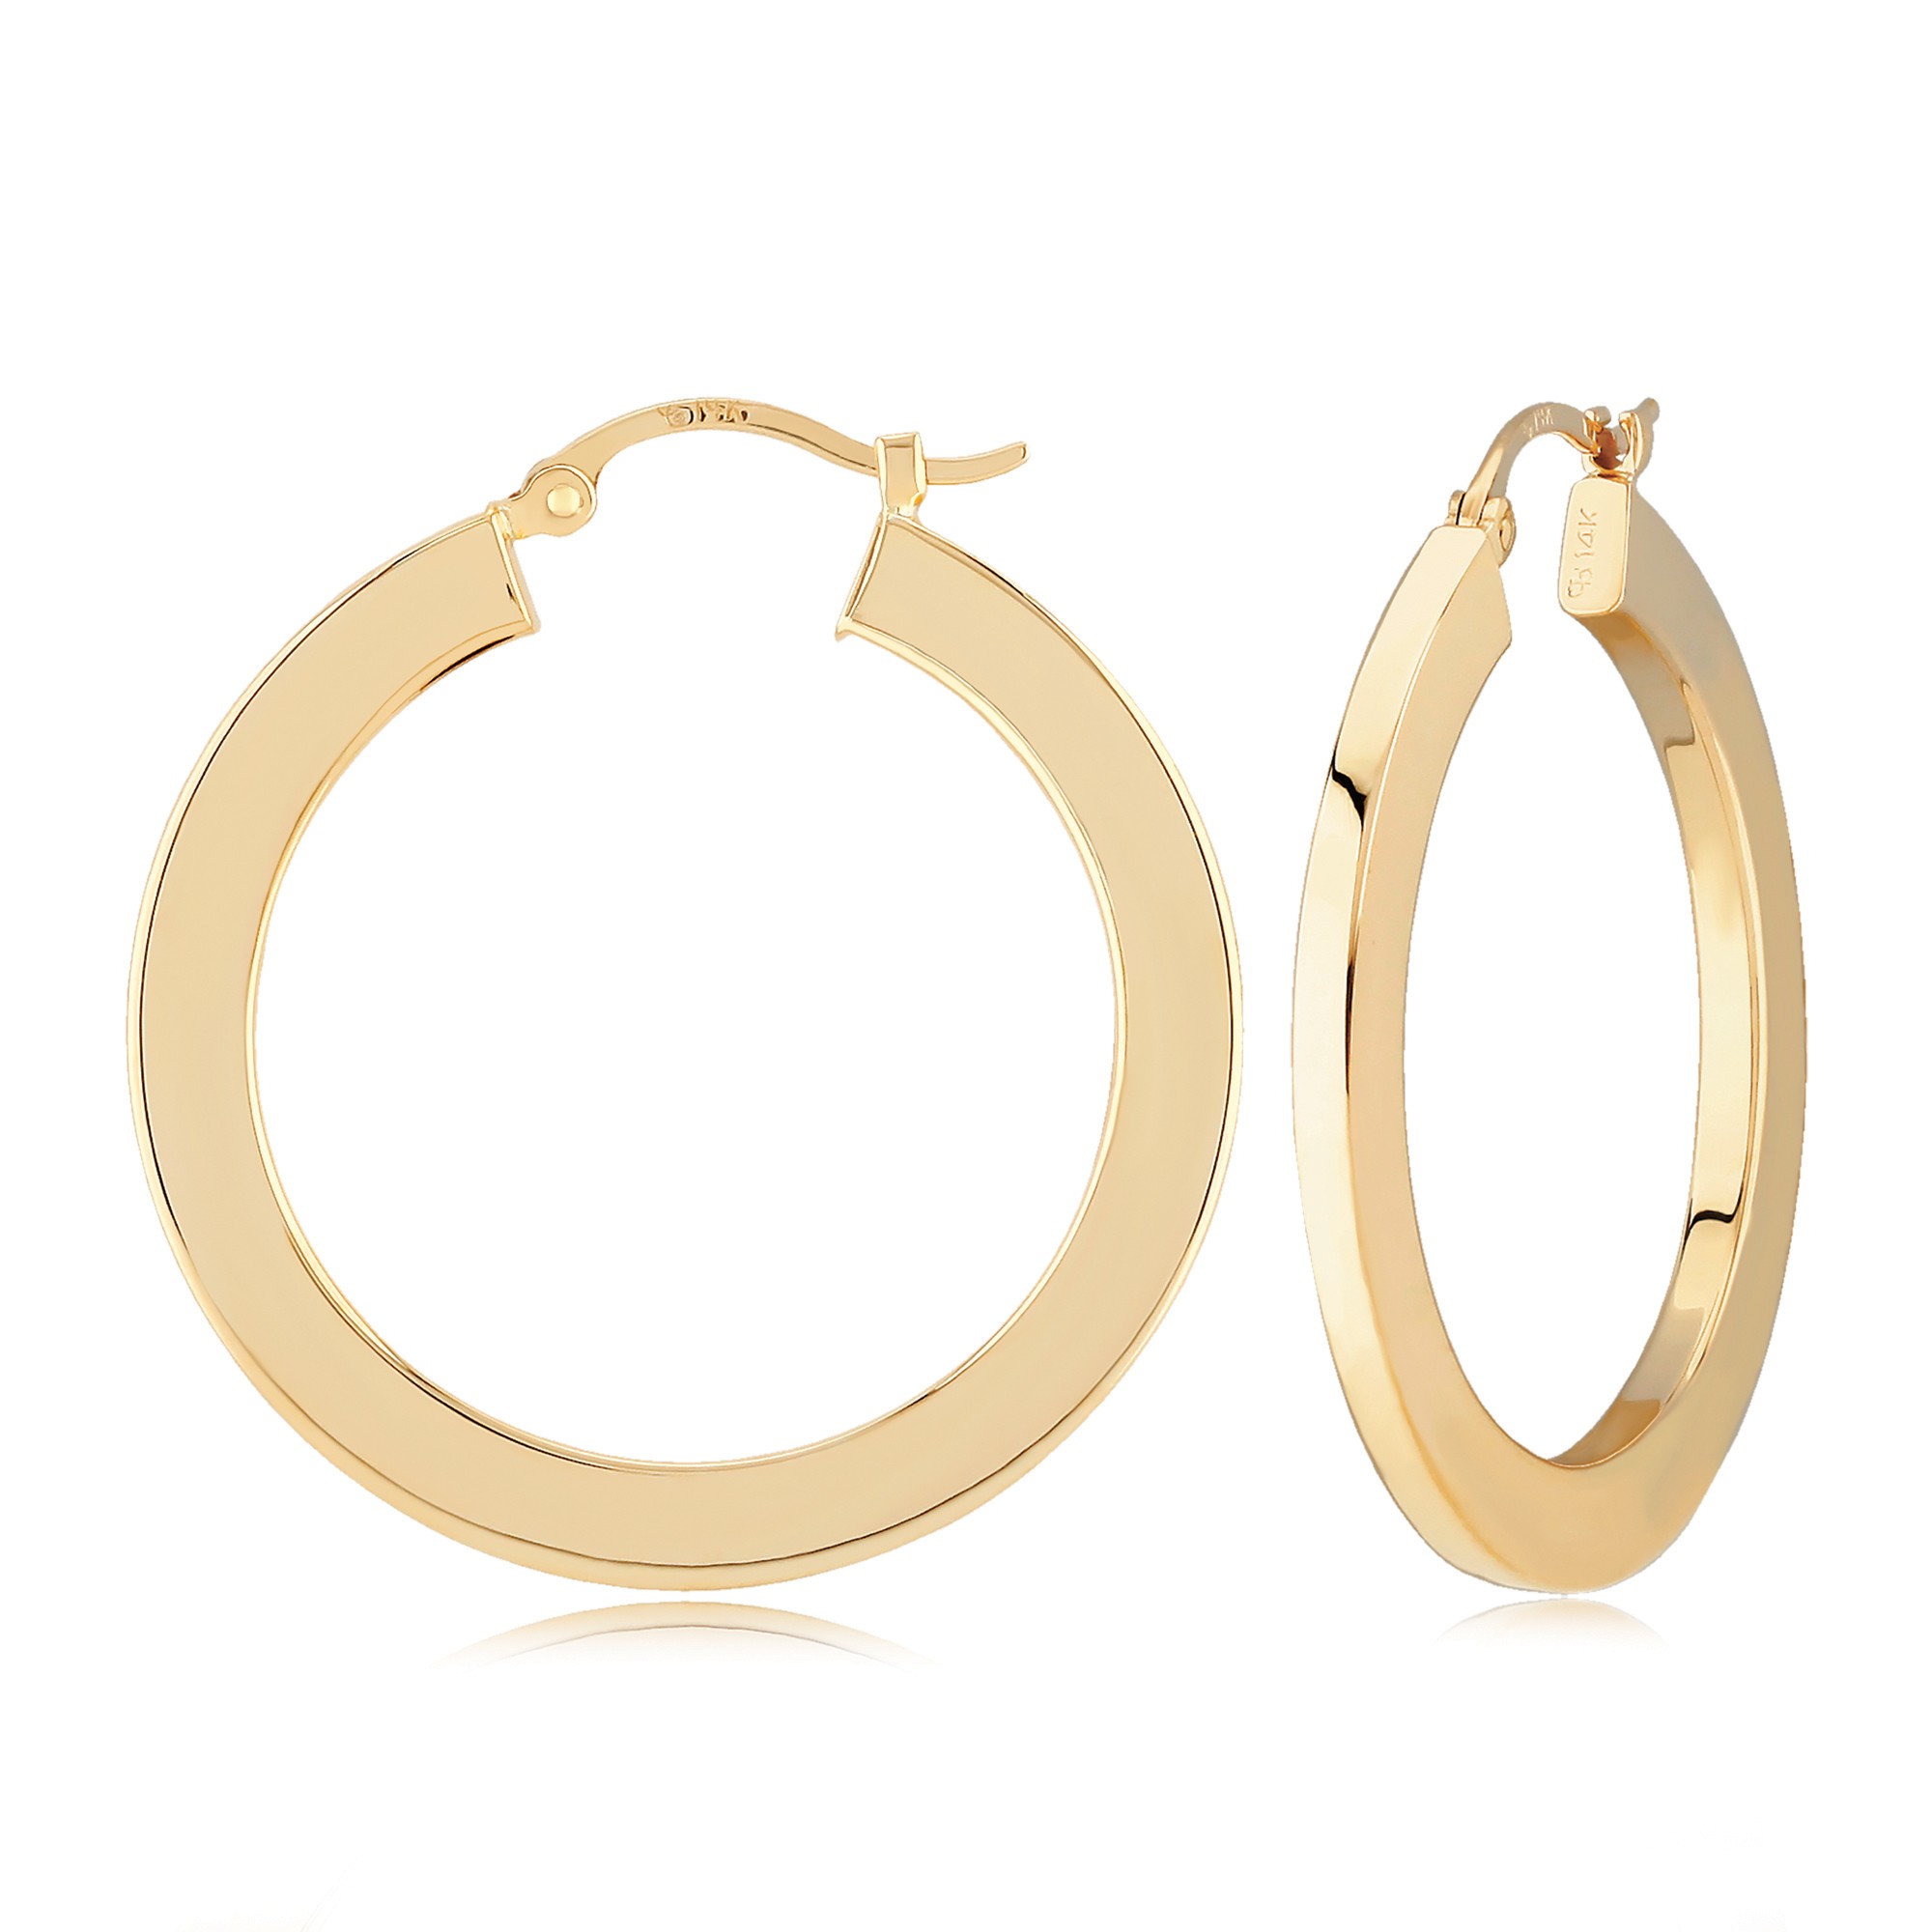 Gold Hoop Earrings -Small Hoop Earrings -Big Hoop Earrings -22K Gold  -Indian Gold Jewelry -Buy Online